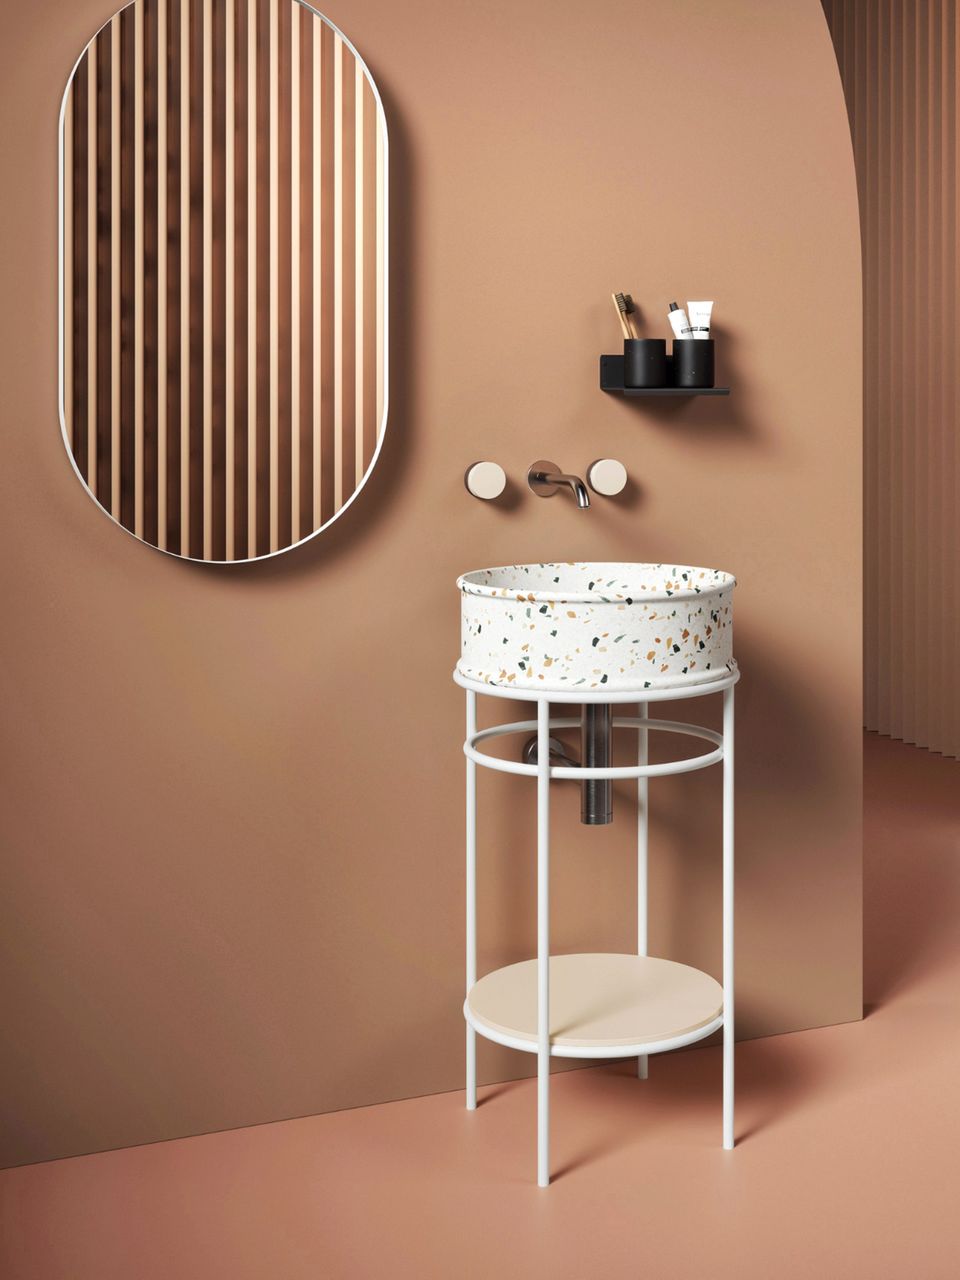 Waschtisch im Terrazzo-Look mit frei stehendem Untergestell vor brauner Wand